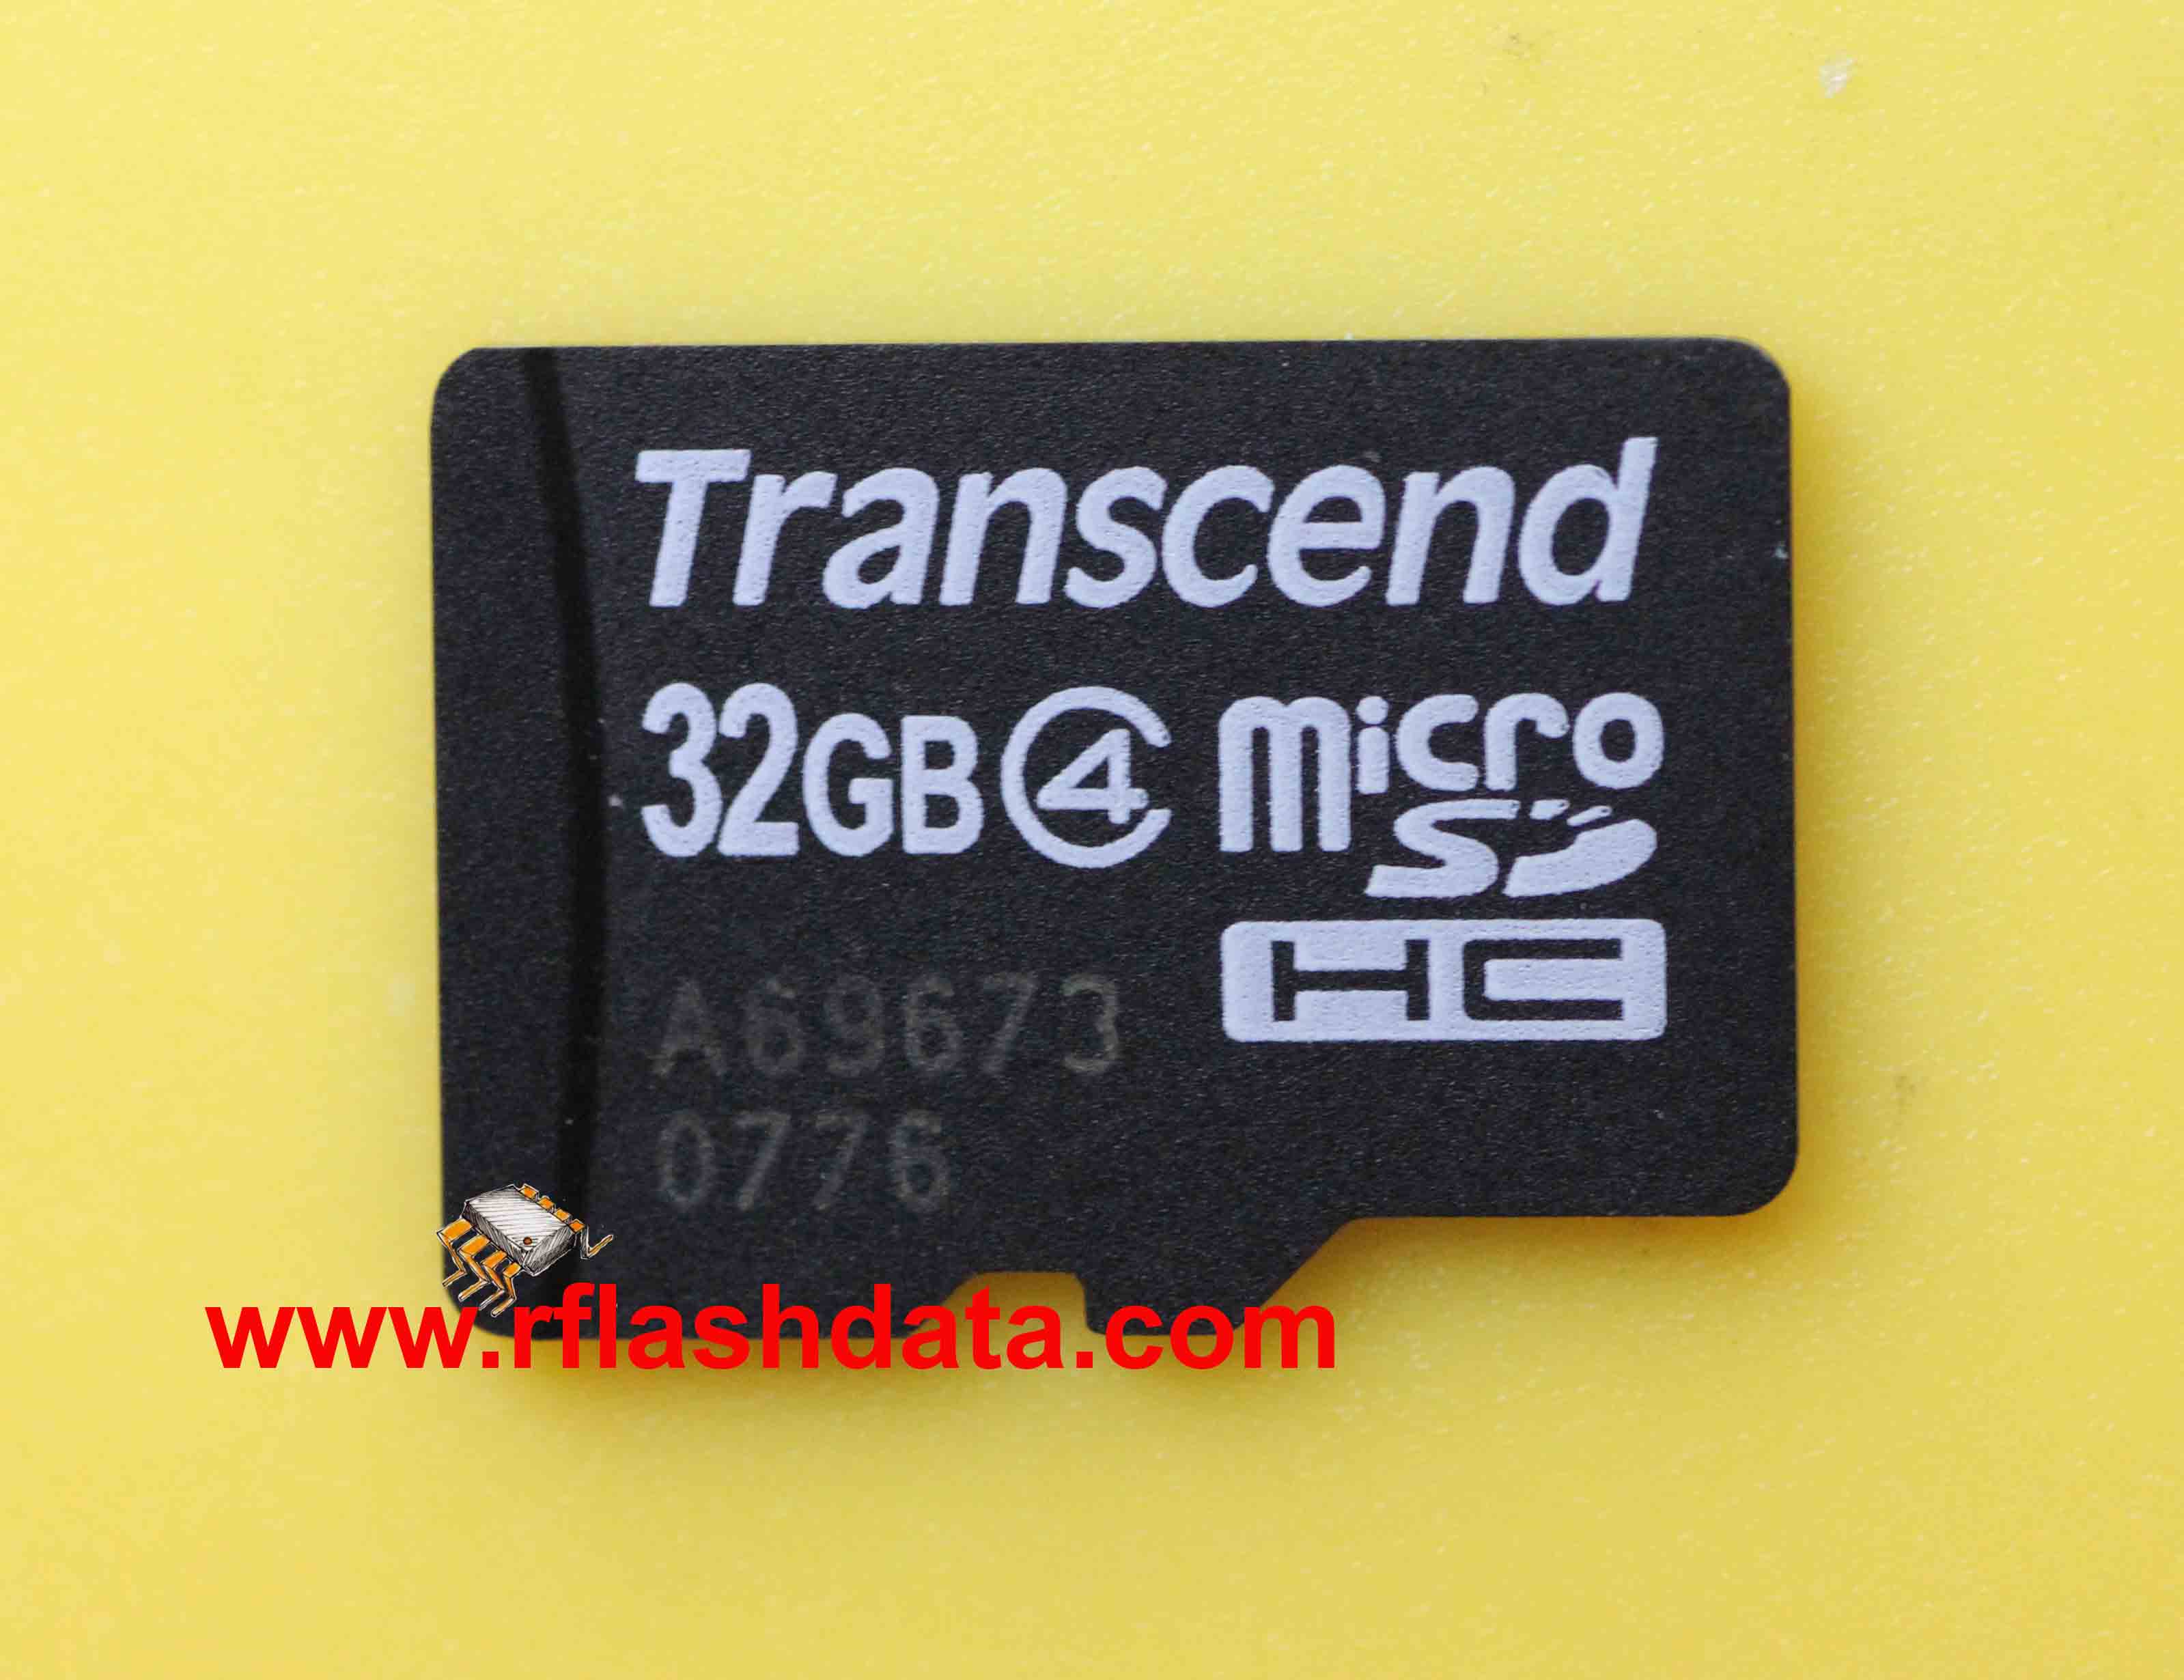 Transcend microSD A69673 0776